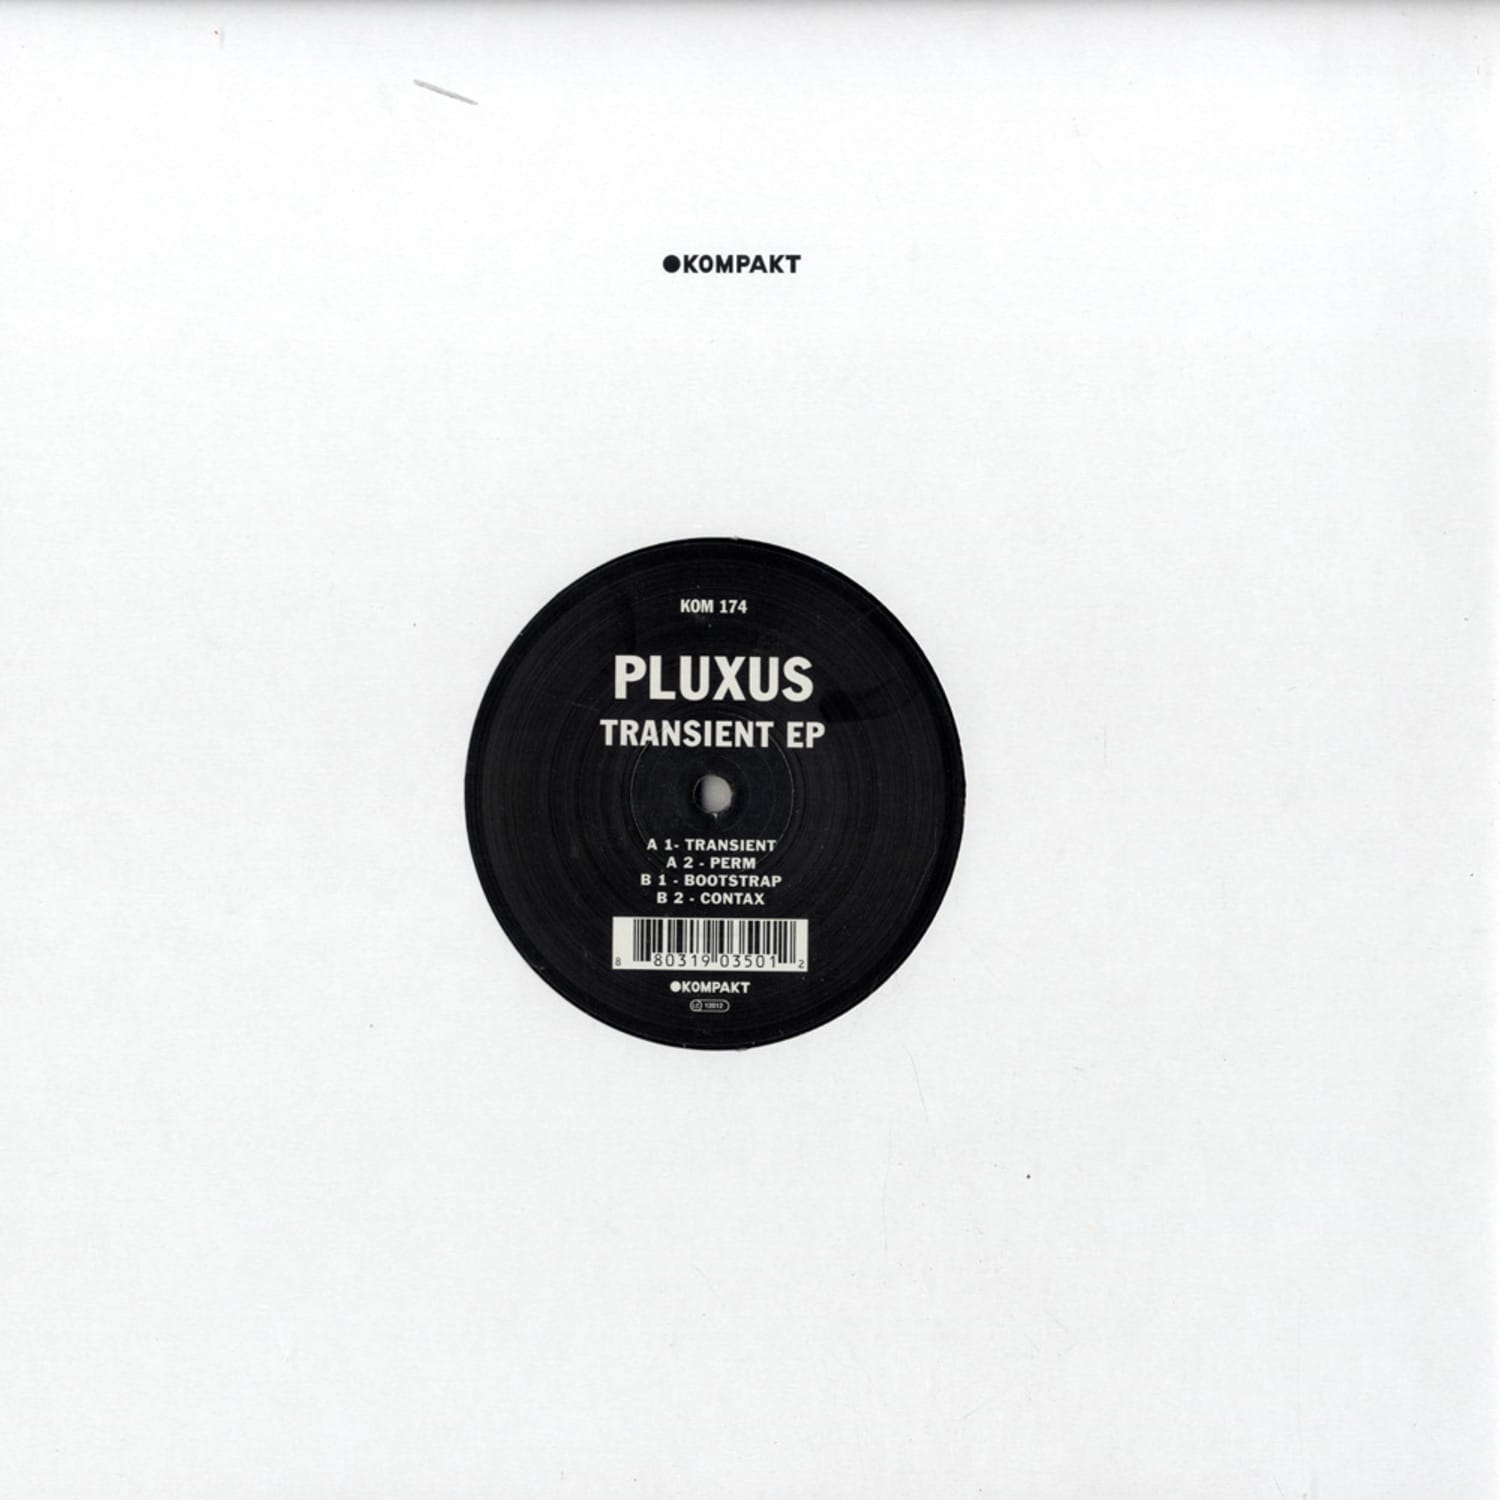 Pluxus - TRANSIENT EP